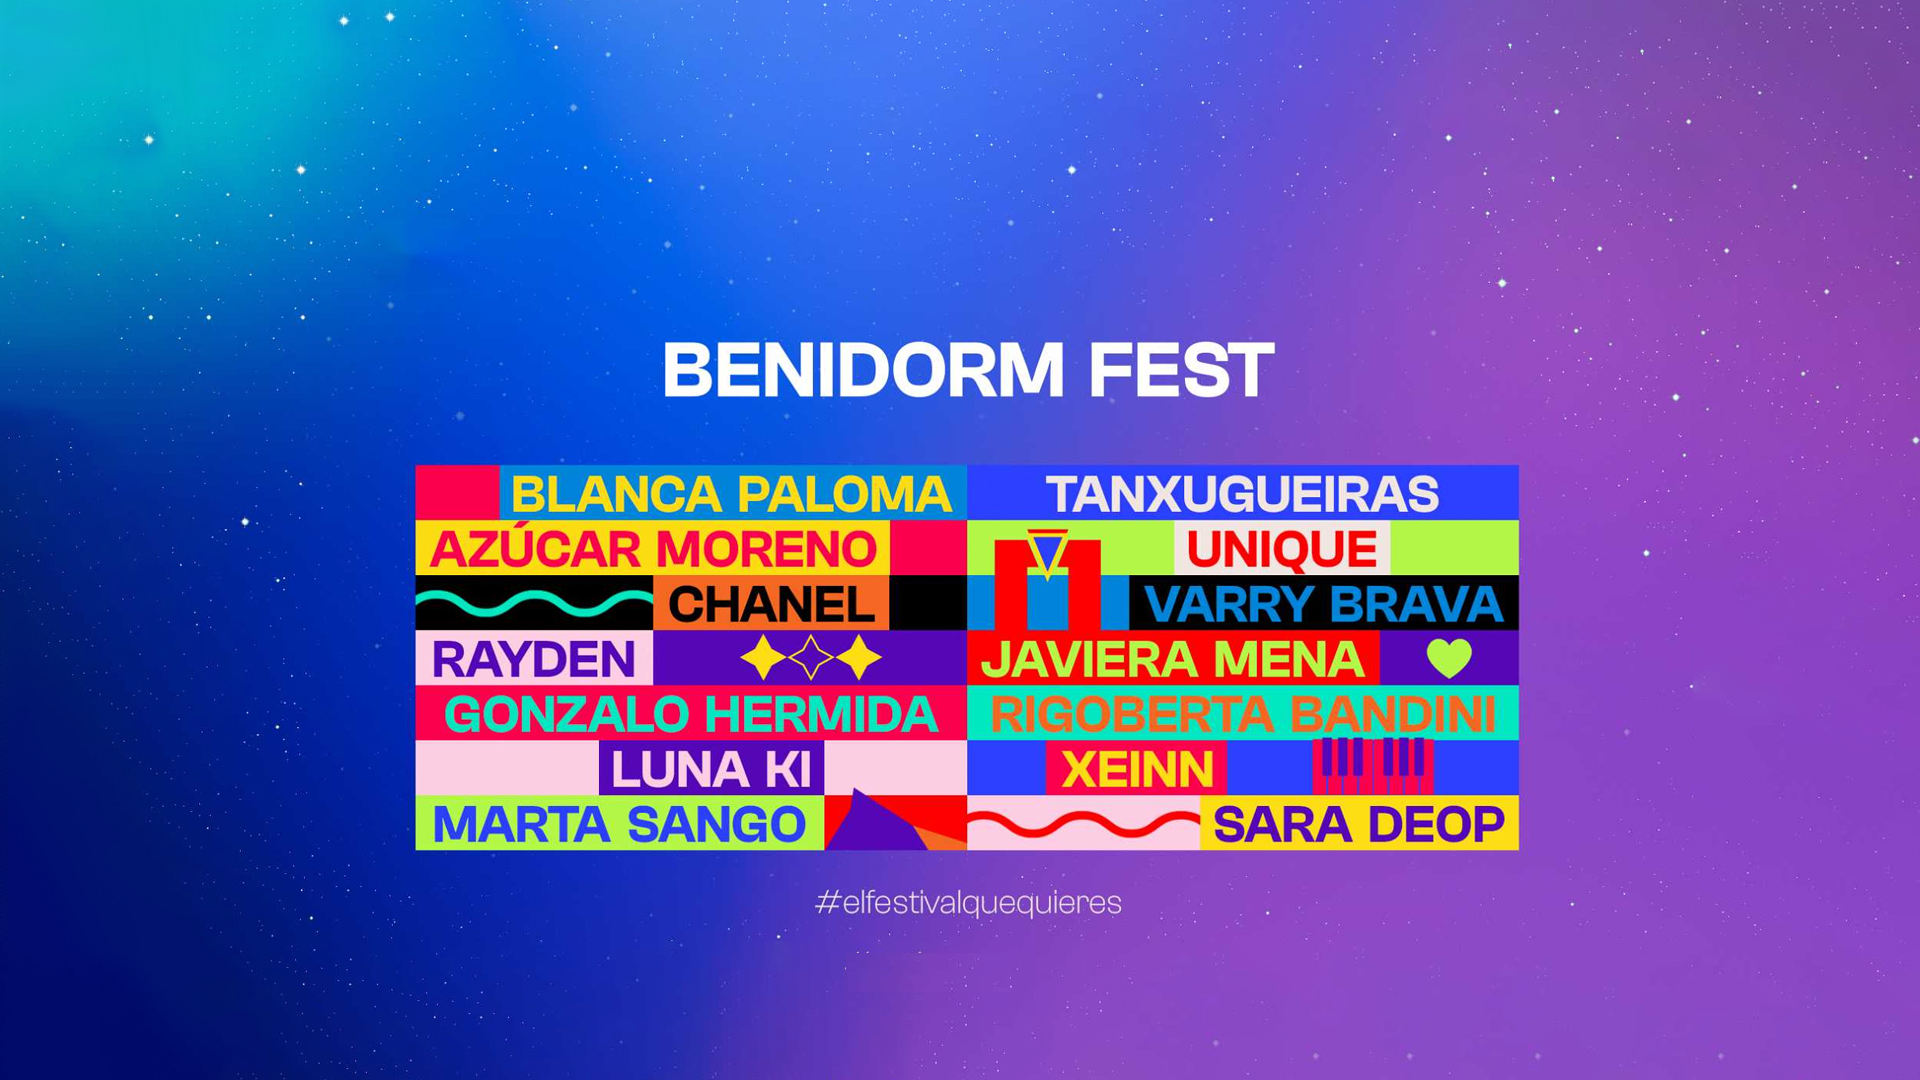 ¿Cuando presentarán los artistas sus temas para el Benidorm Fest? ¡Repasa el calendario!